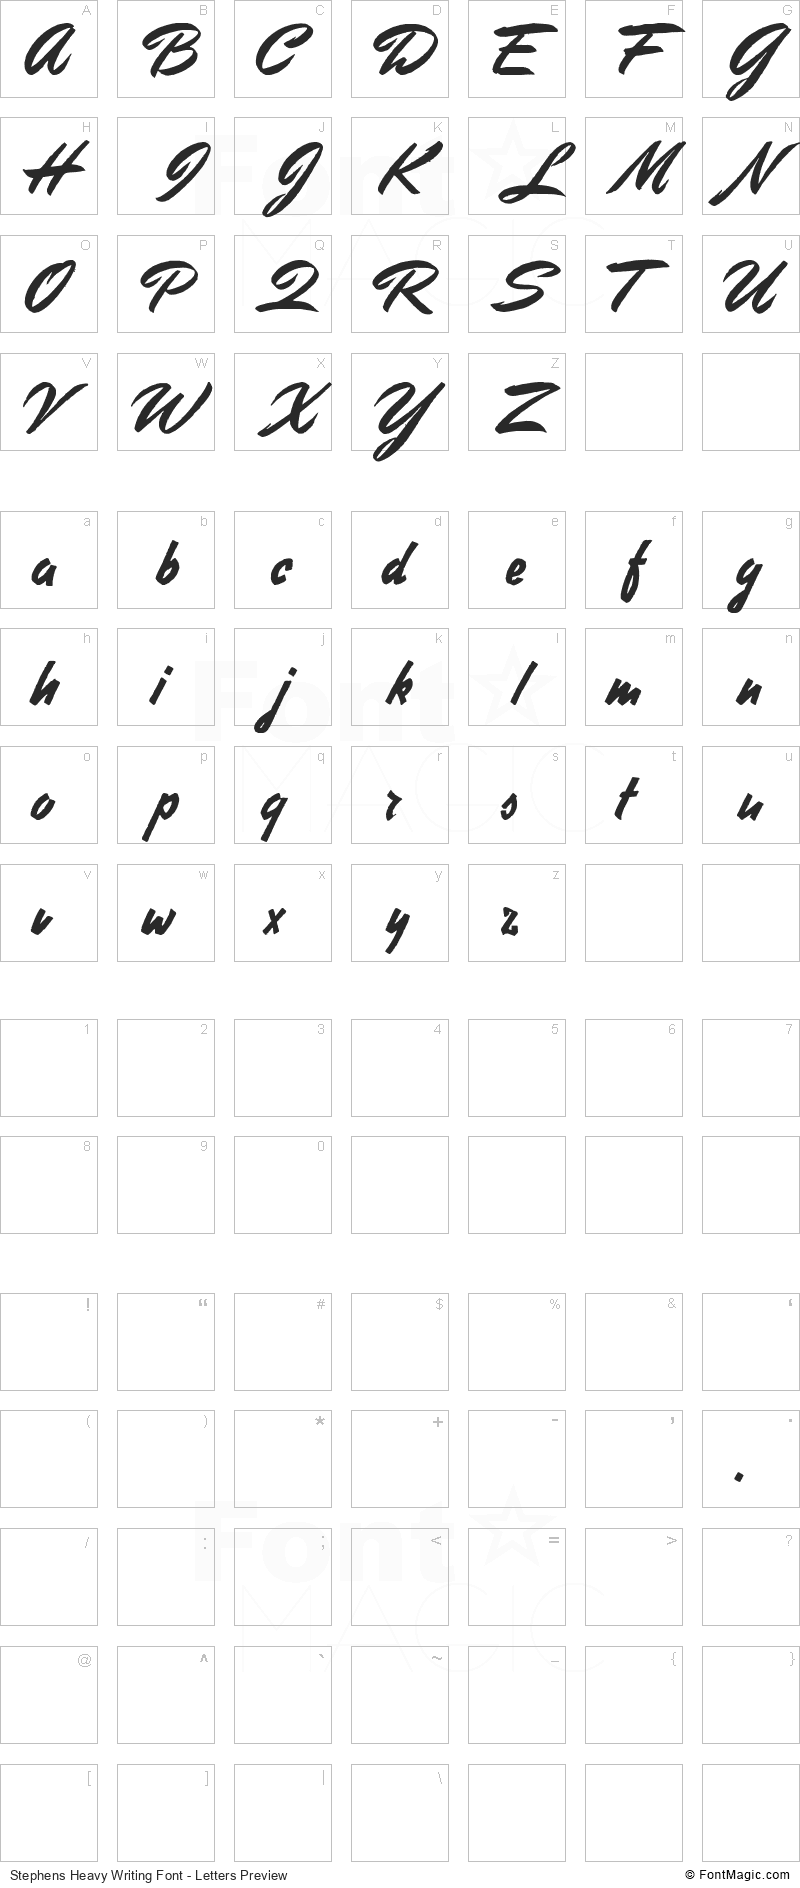 Stephens Heavy Writing Font - FontMagic